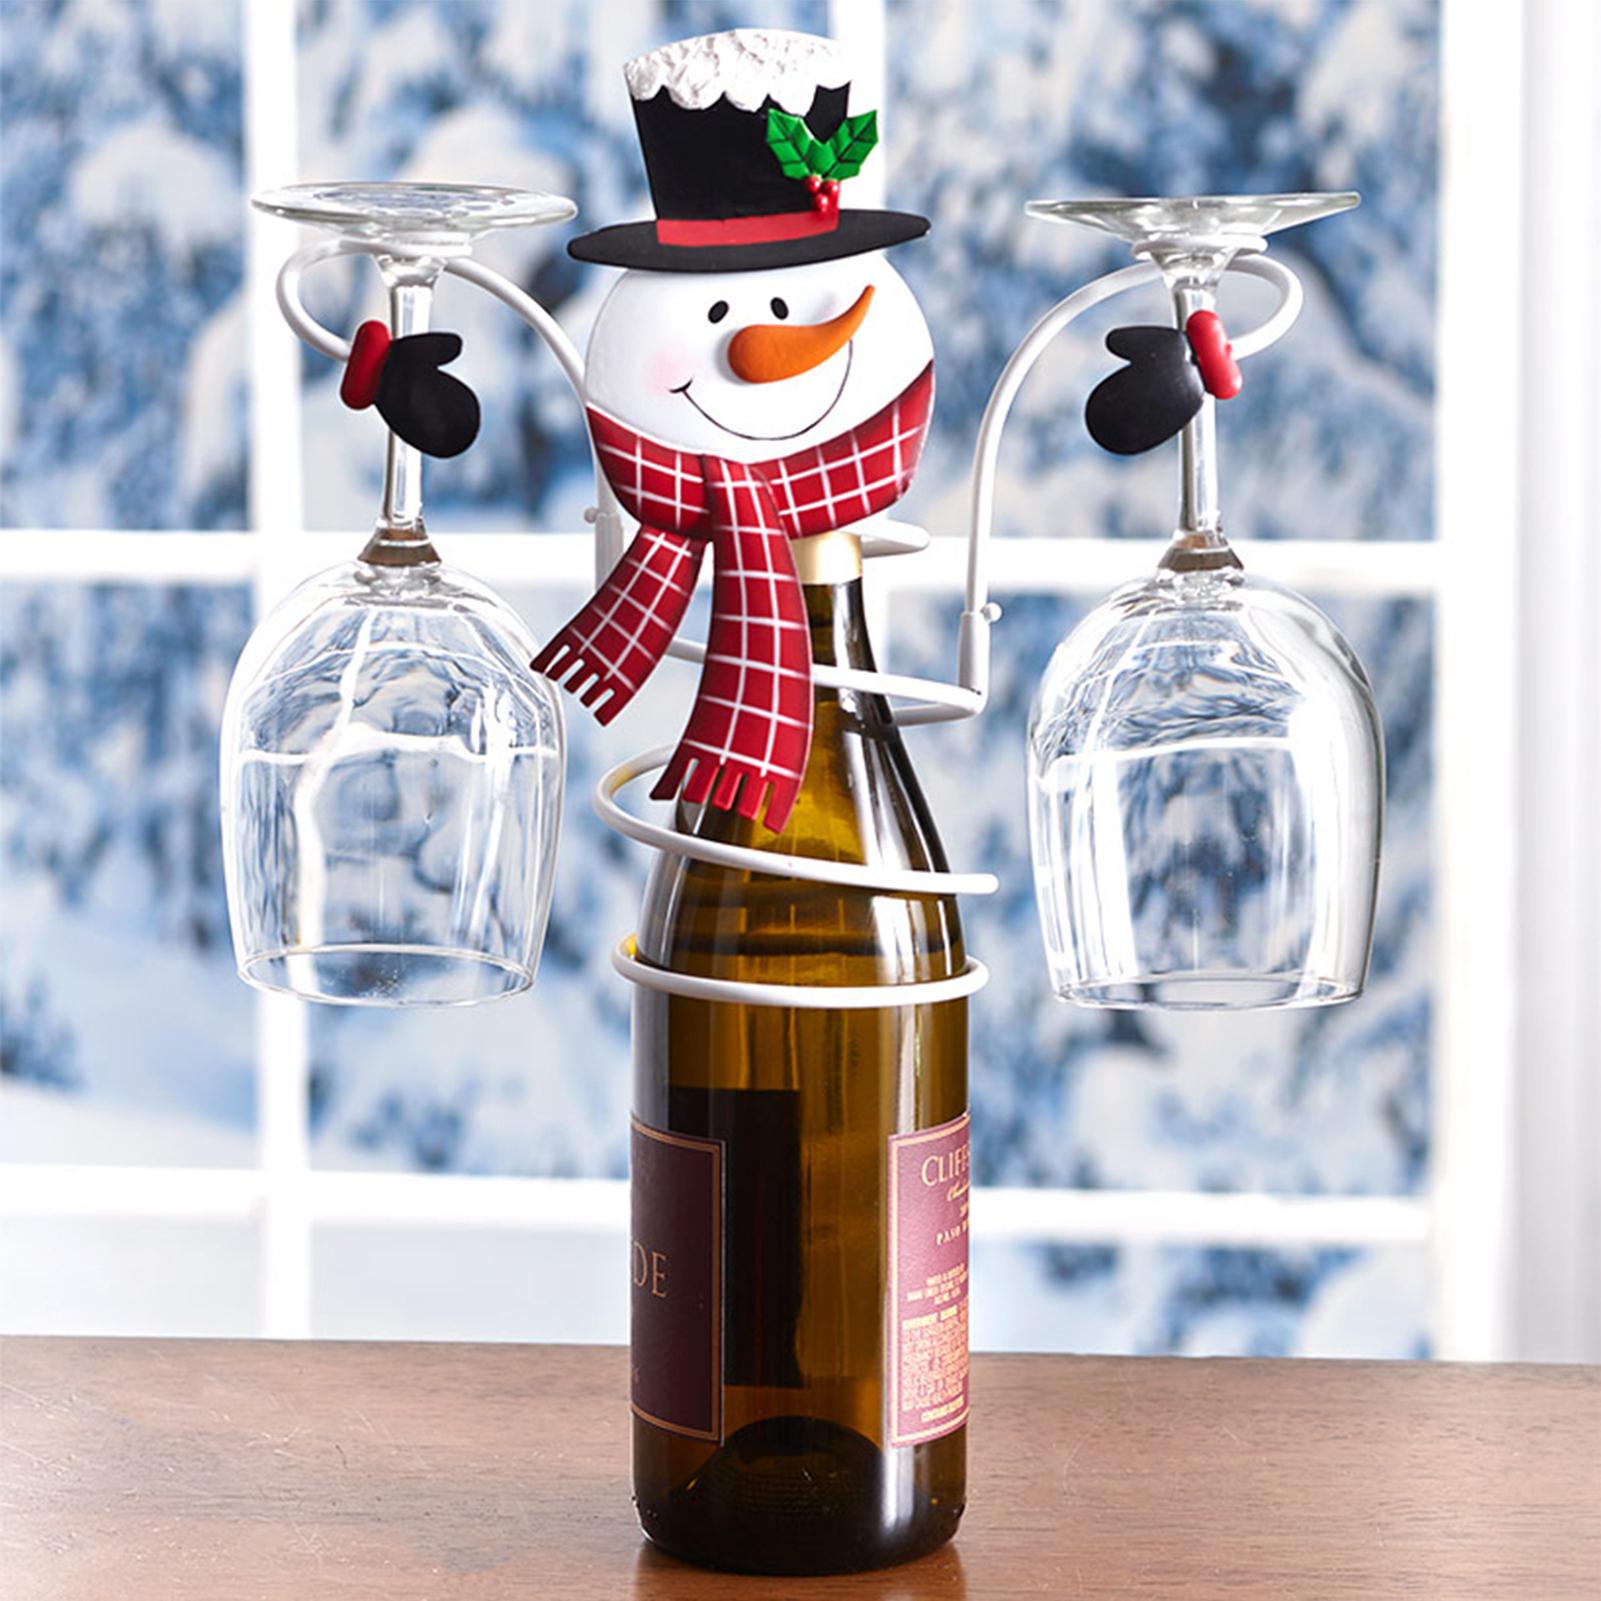 Phụ kiện giữ bình rượu vang trang trí người tuyết mùa đông cho tiệc giáng sinh